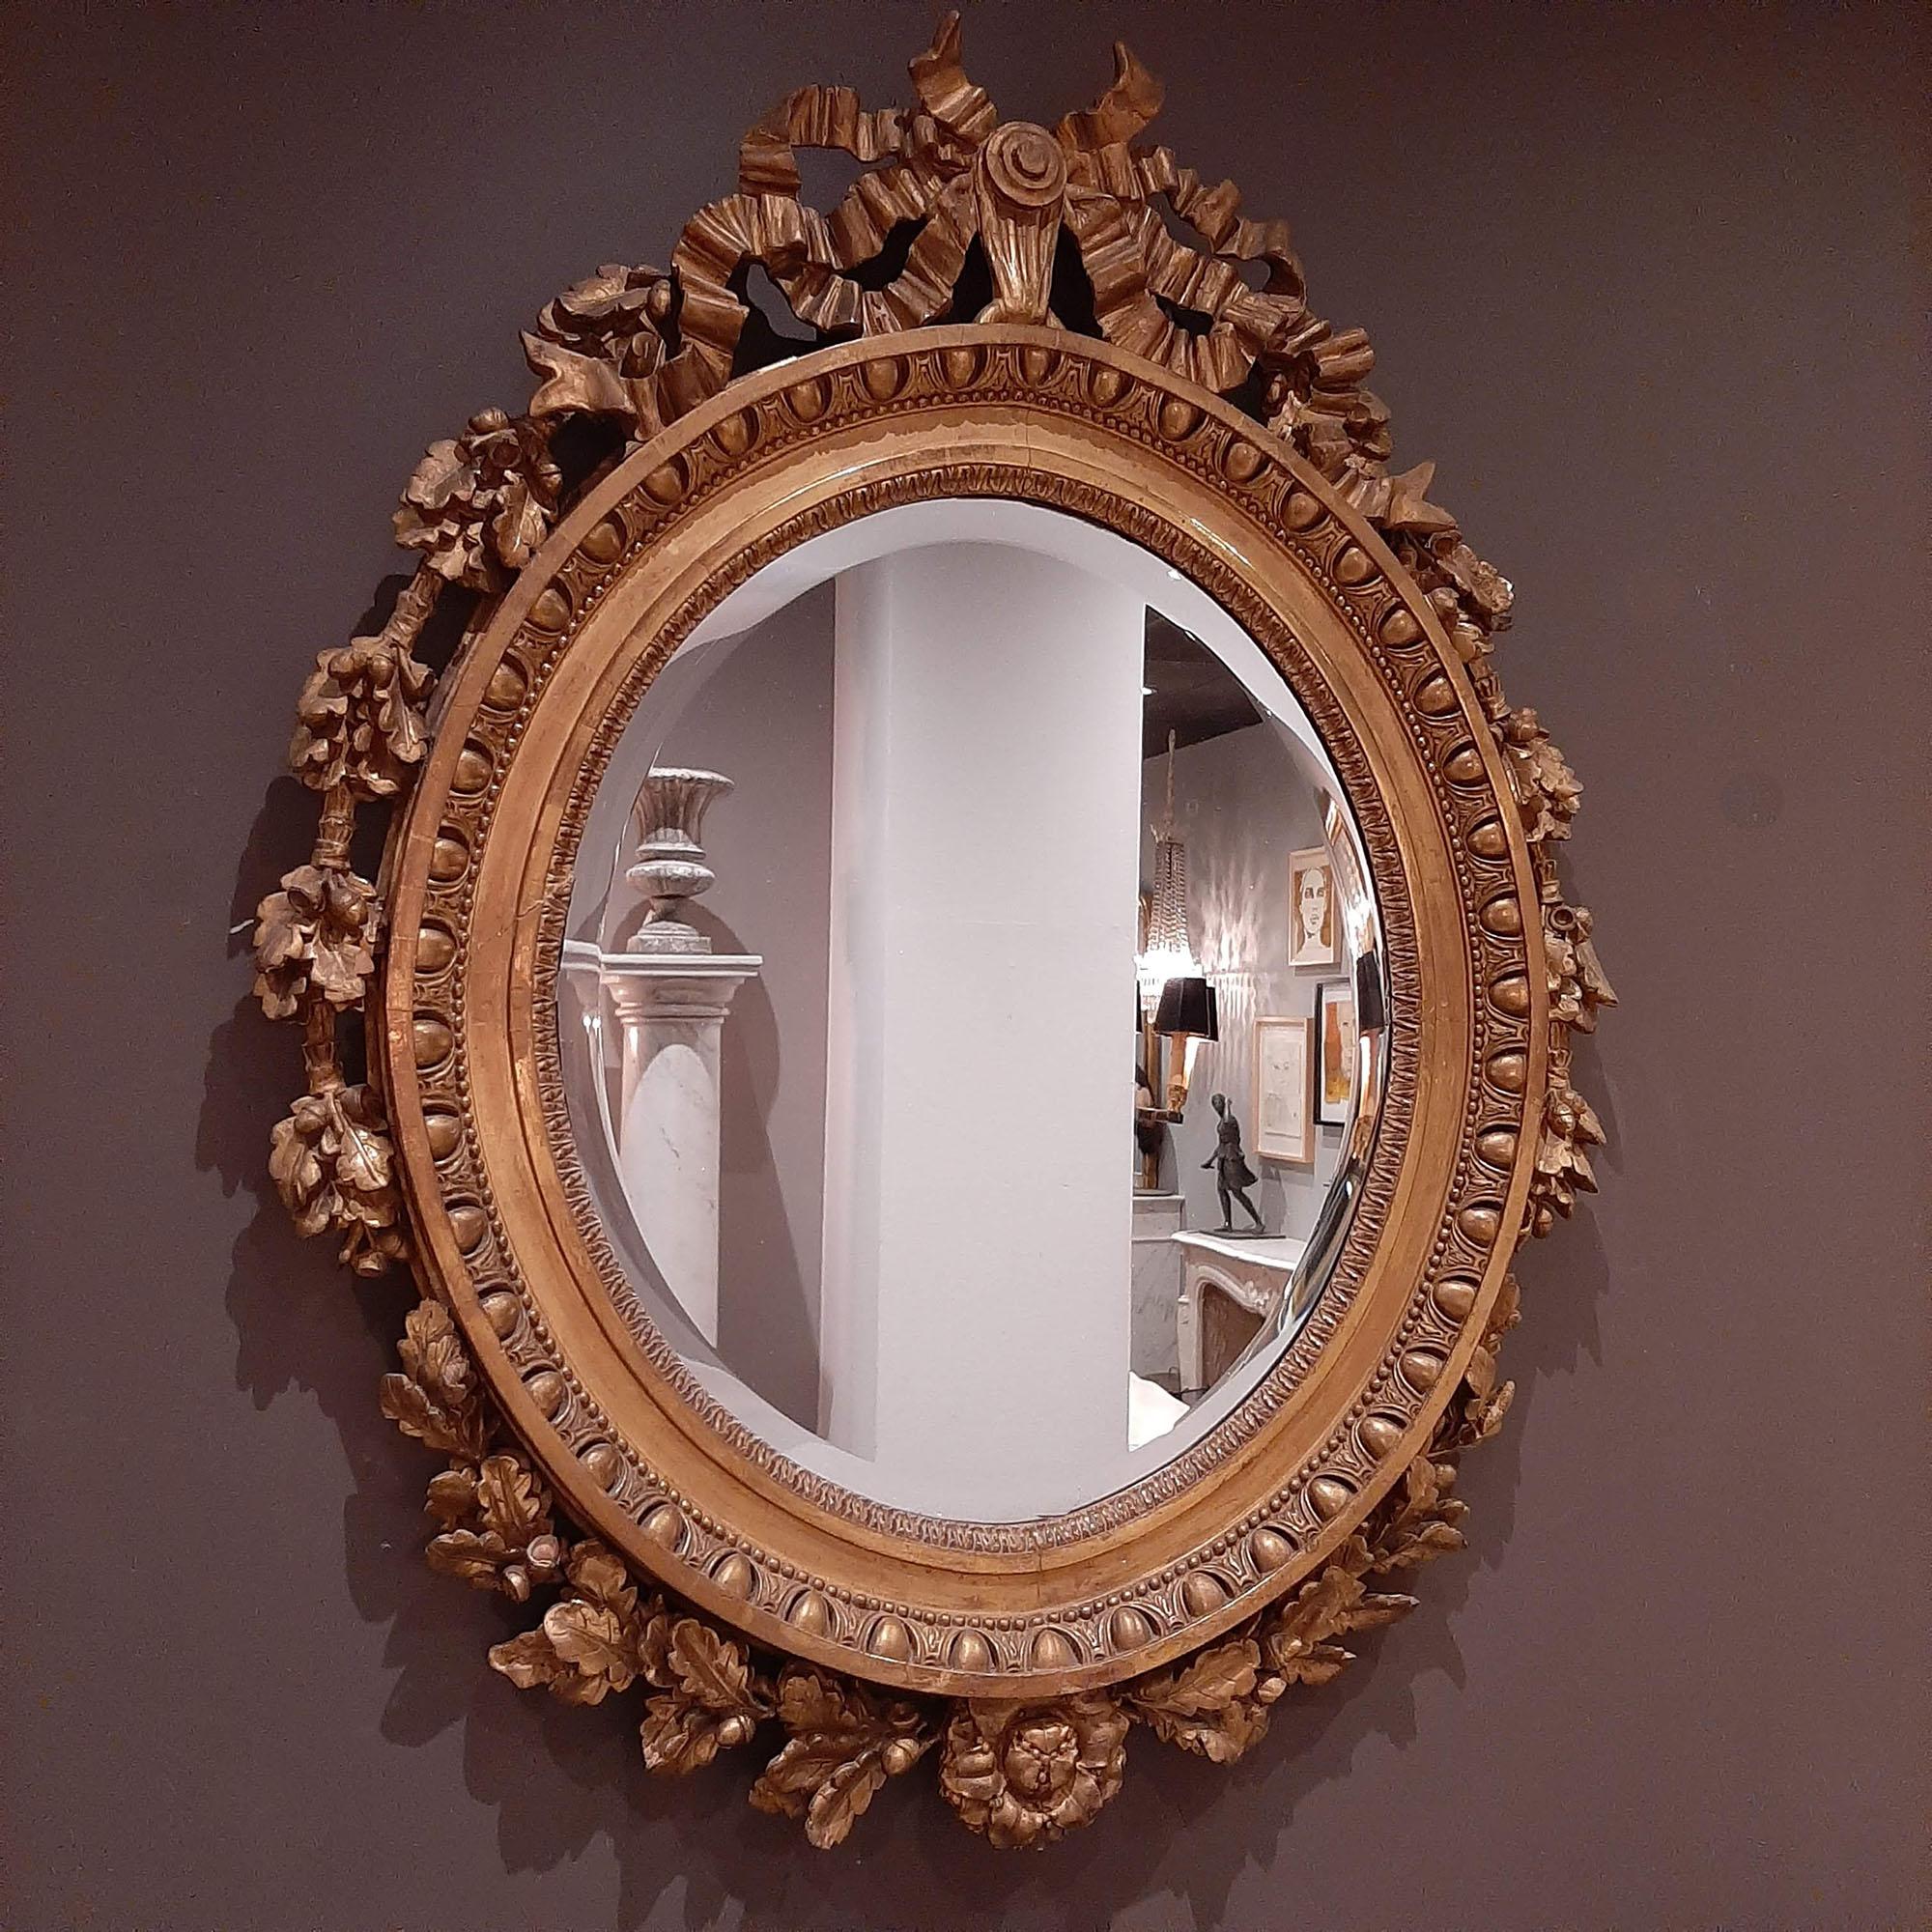 Miroir girandole ovale, doré, de style Louis XVI, datant du 19e siècle. Cadre doré magnifiquement sculpté avec un miroir à facettes.